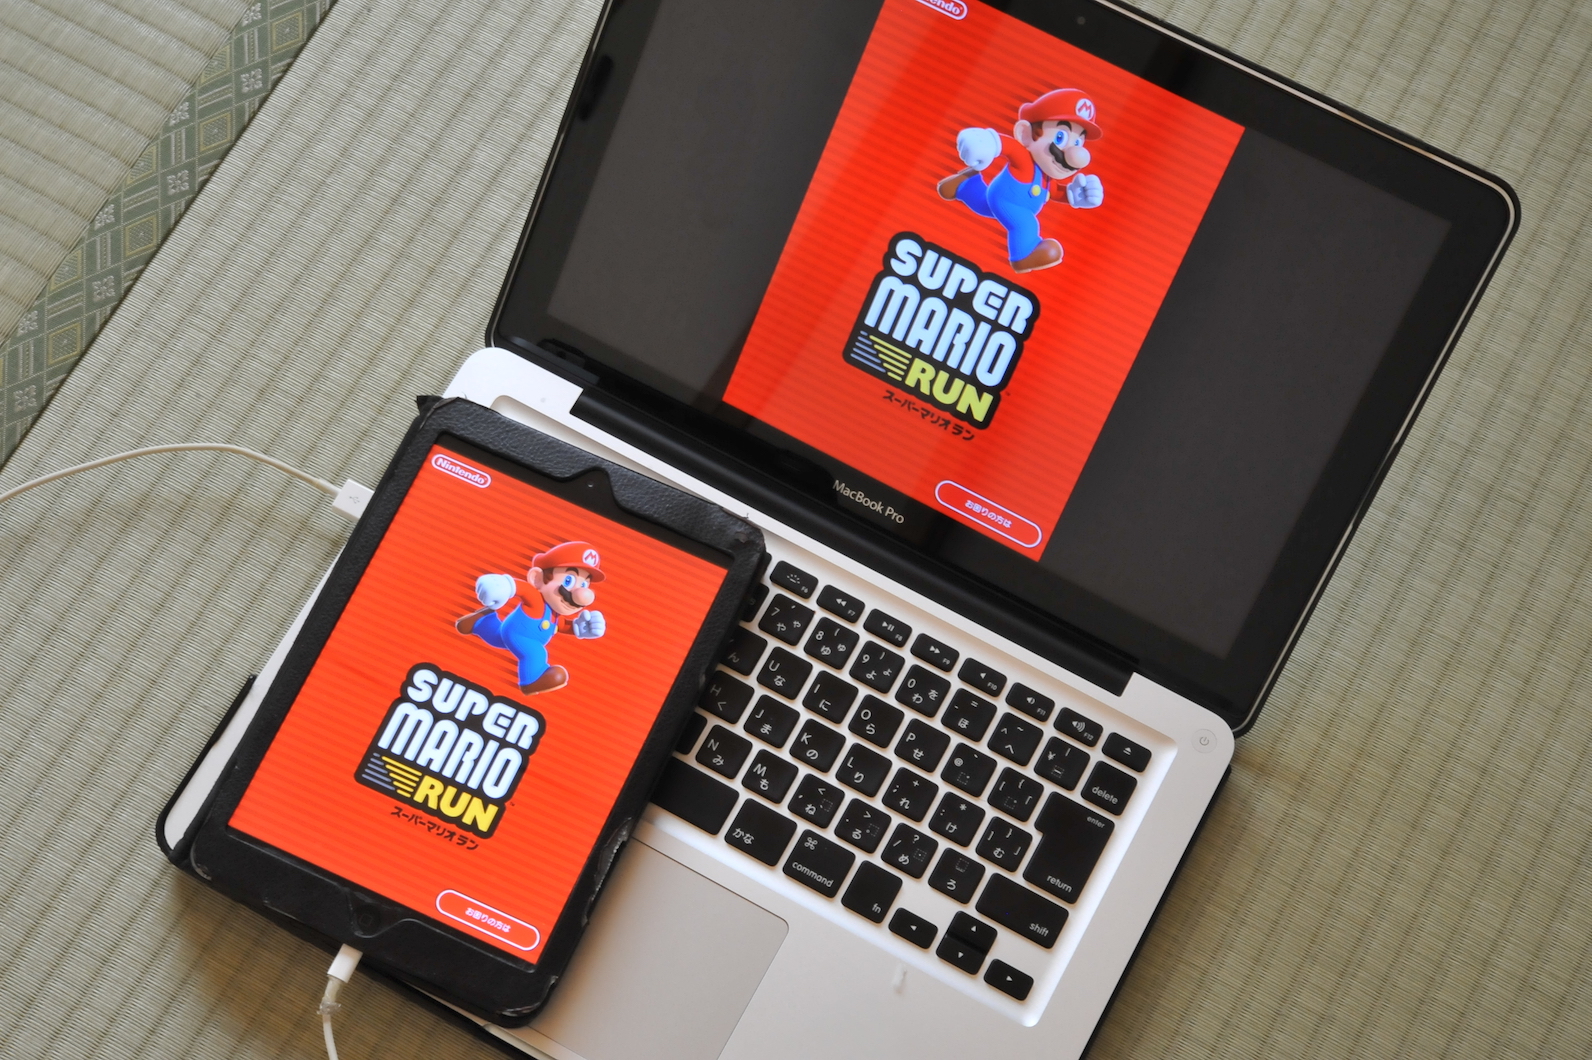 【ゲーム録画】iPad mini ゲームを録画する方法 Macbook Pro と QuickTime